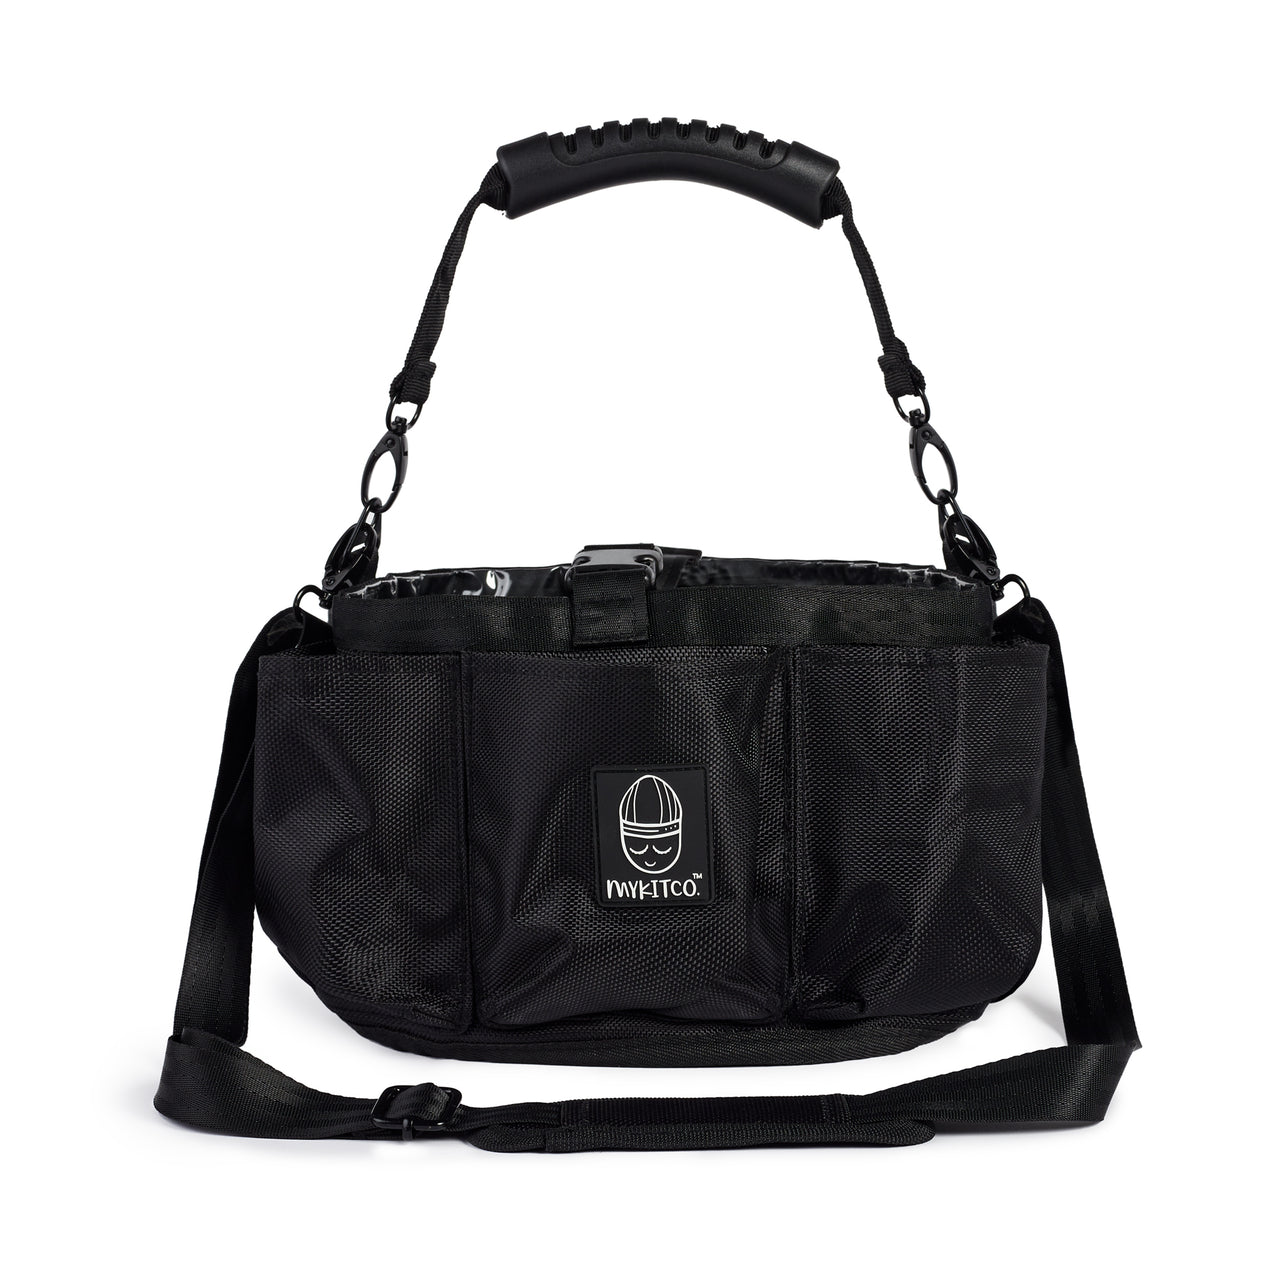 Backpack Handy and sling handbag bag